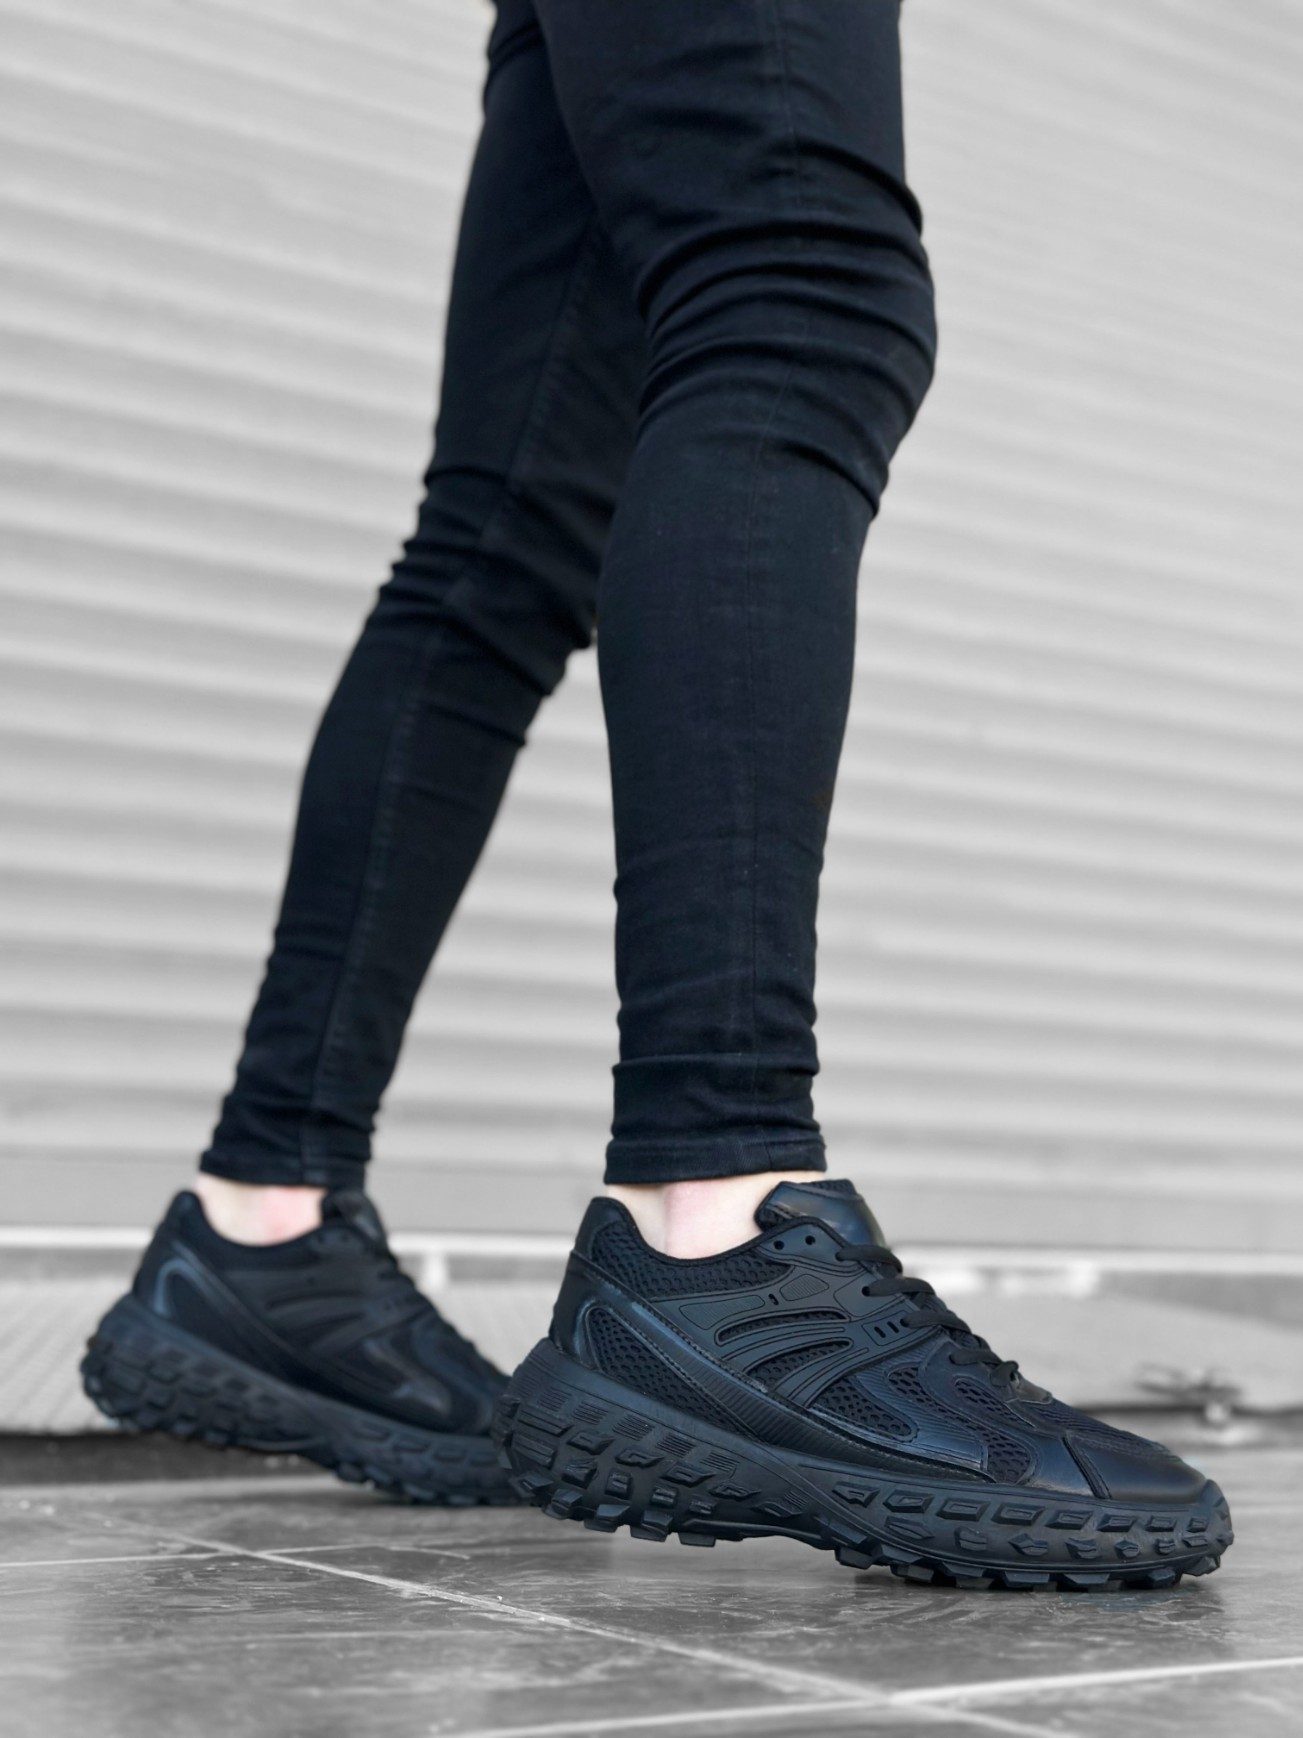 CLZ946 Tarz Sneakers Ithal Siyah Fileli Rahat Taban Spor Ayakkabısı